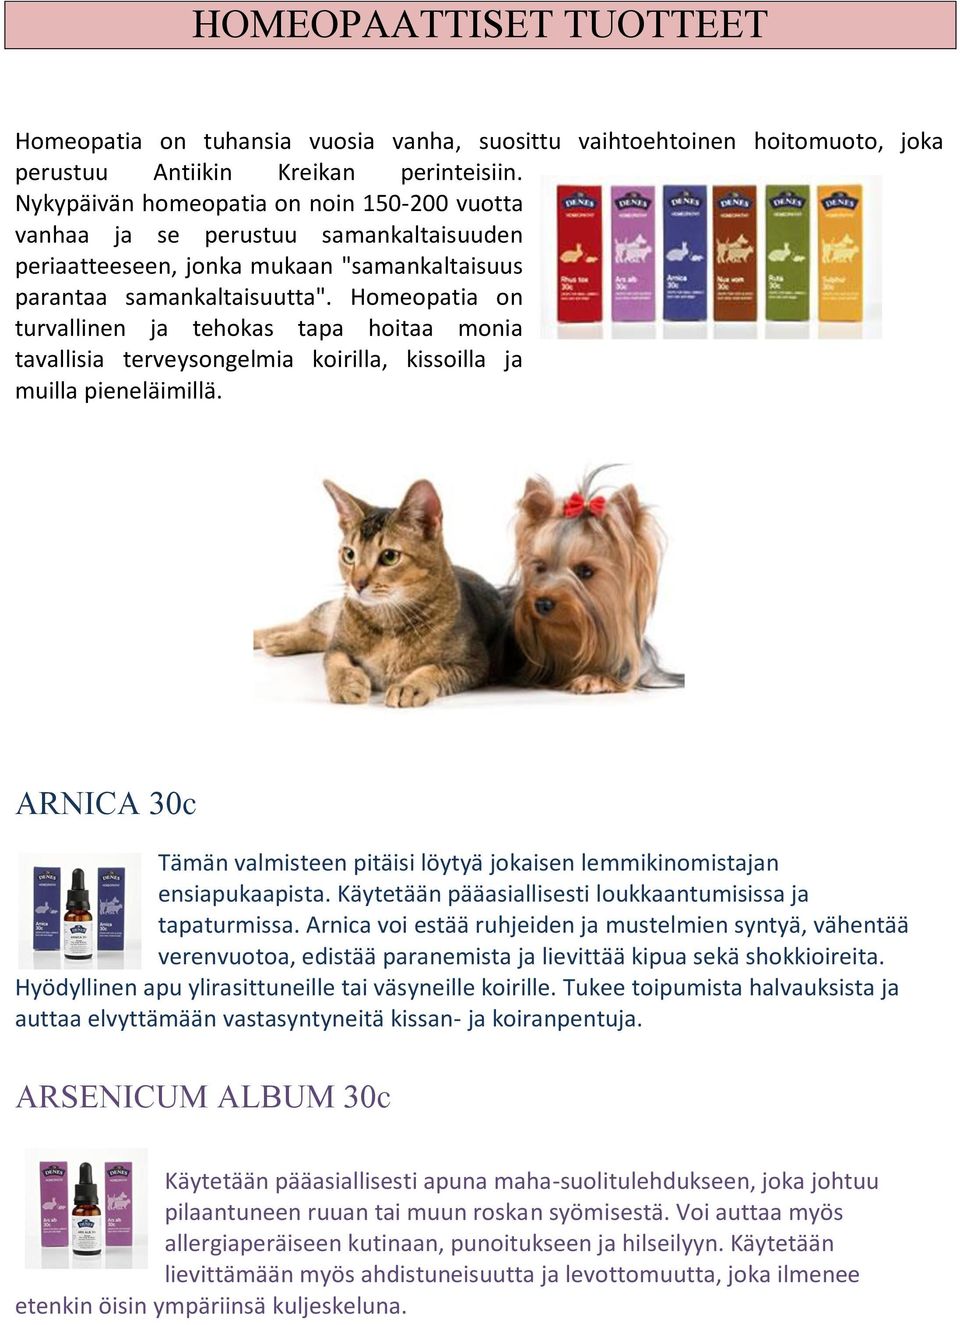 Homeopatia on turvallinen ja tehokas tapa hoitaa monia tavallisia terveysongelmia koirilla, kissoilla ja muilla pieneläimillä.